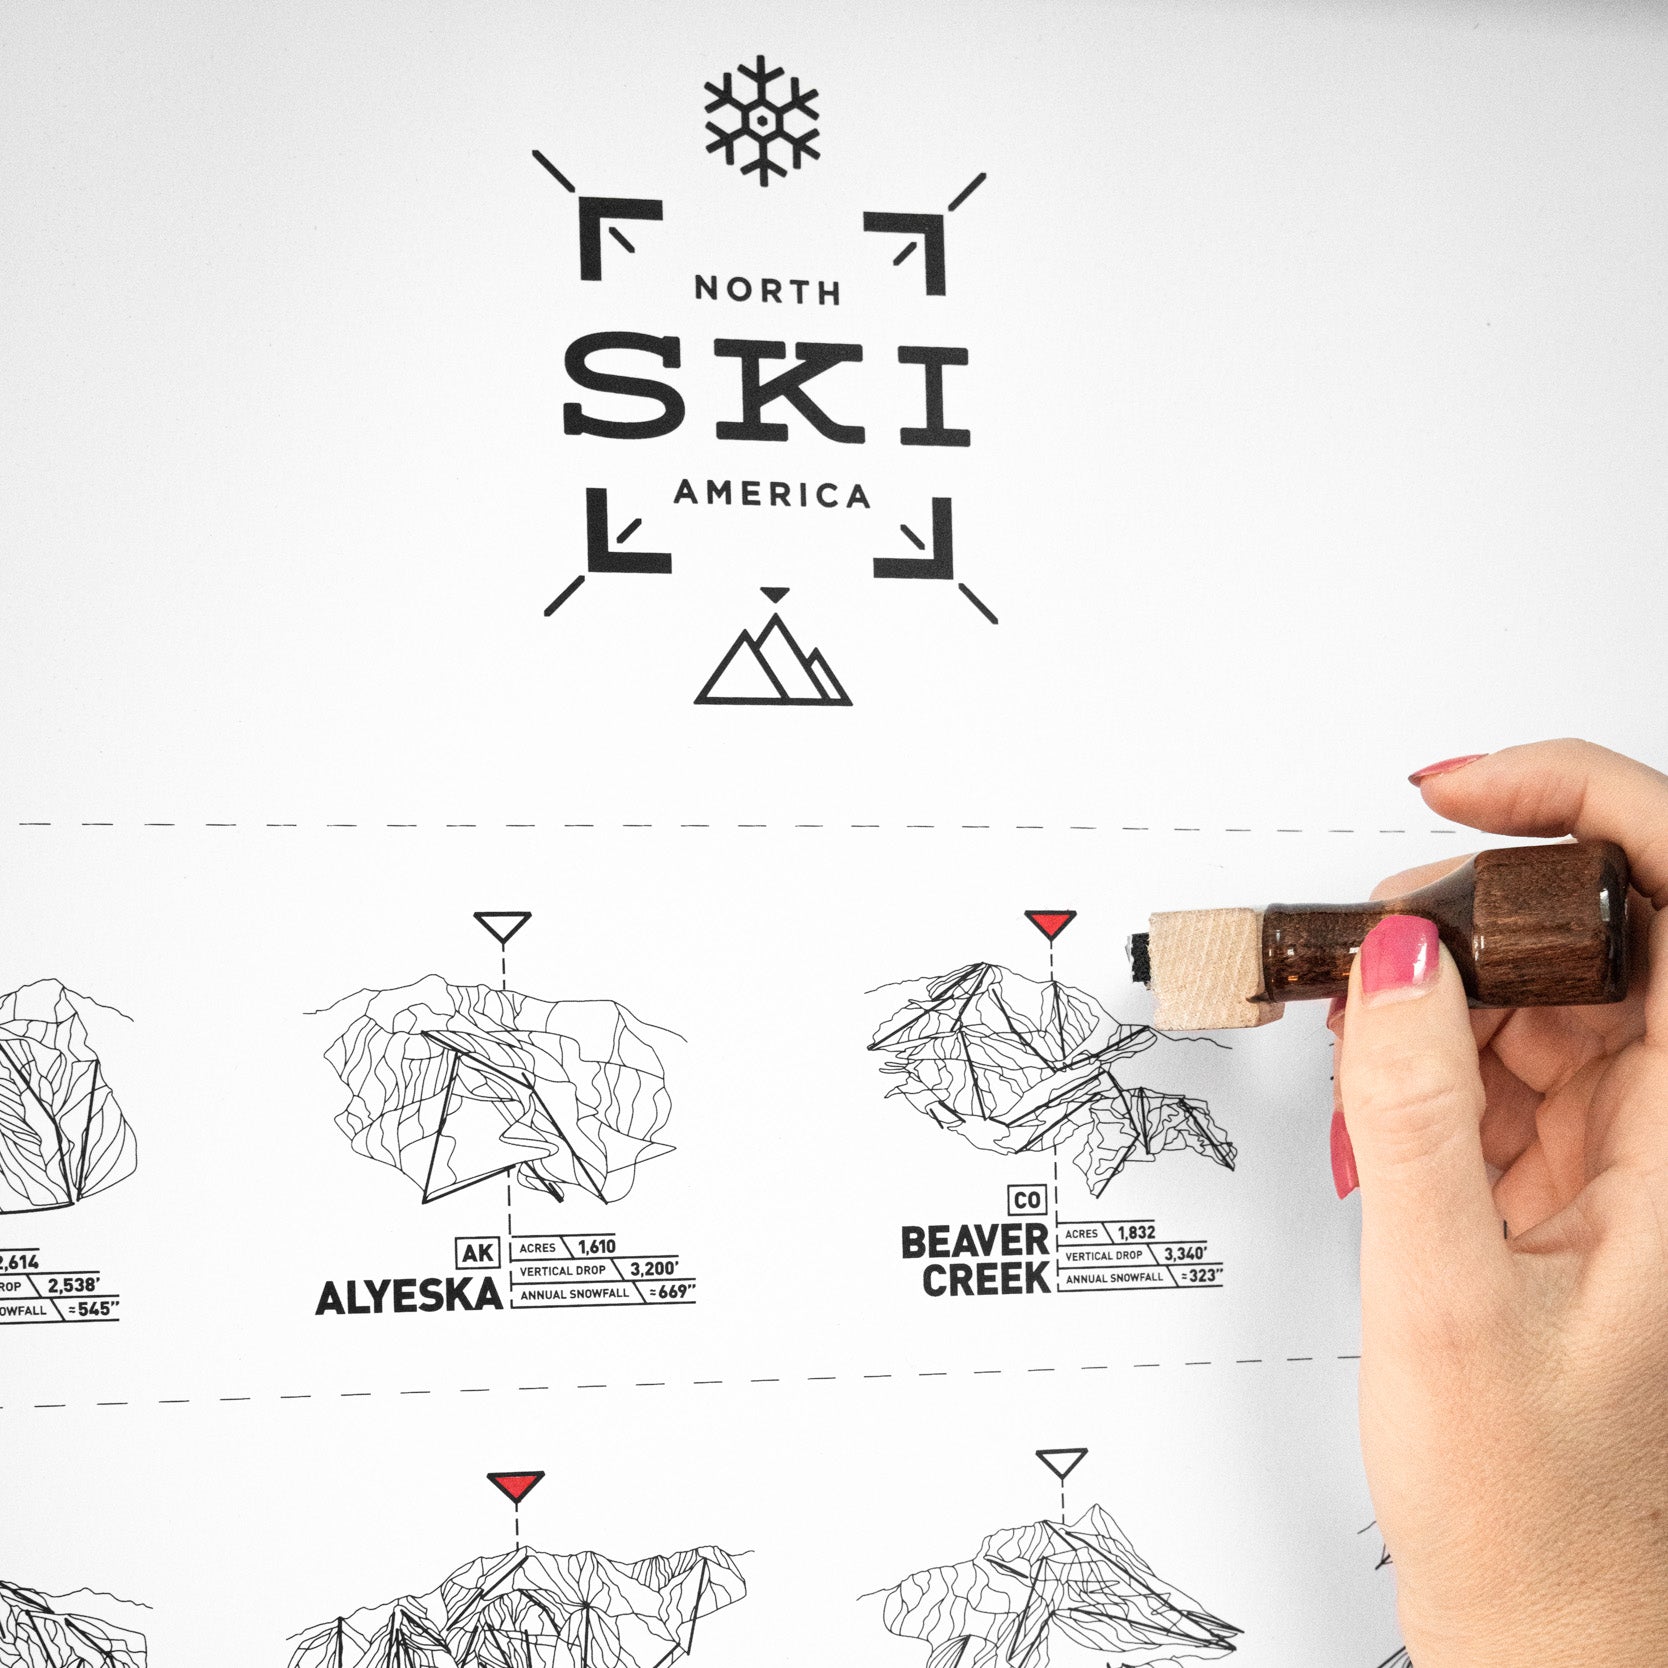 The Ski Register Print